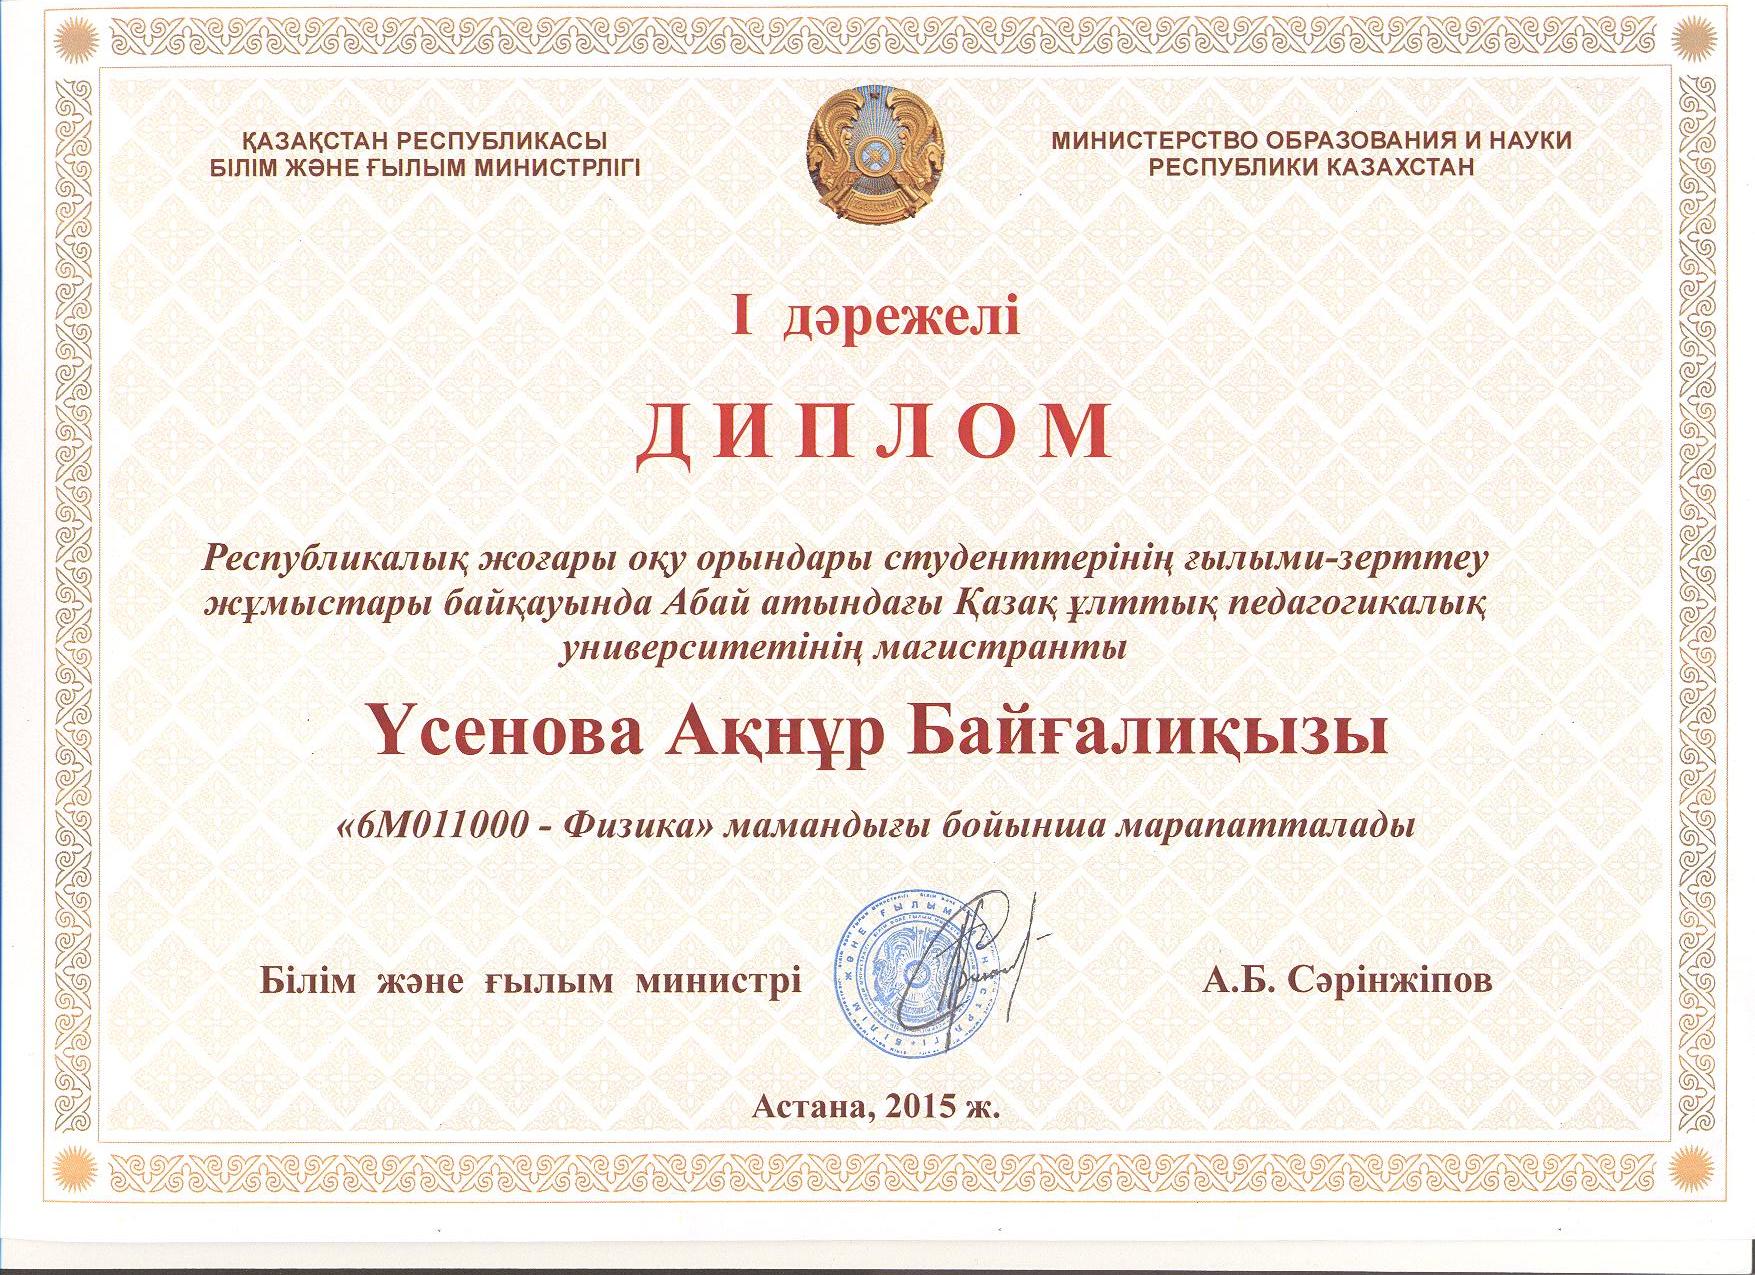 Қазақстан білім министрлігі. Министерство образования и науки Республики Казахстан.